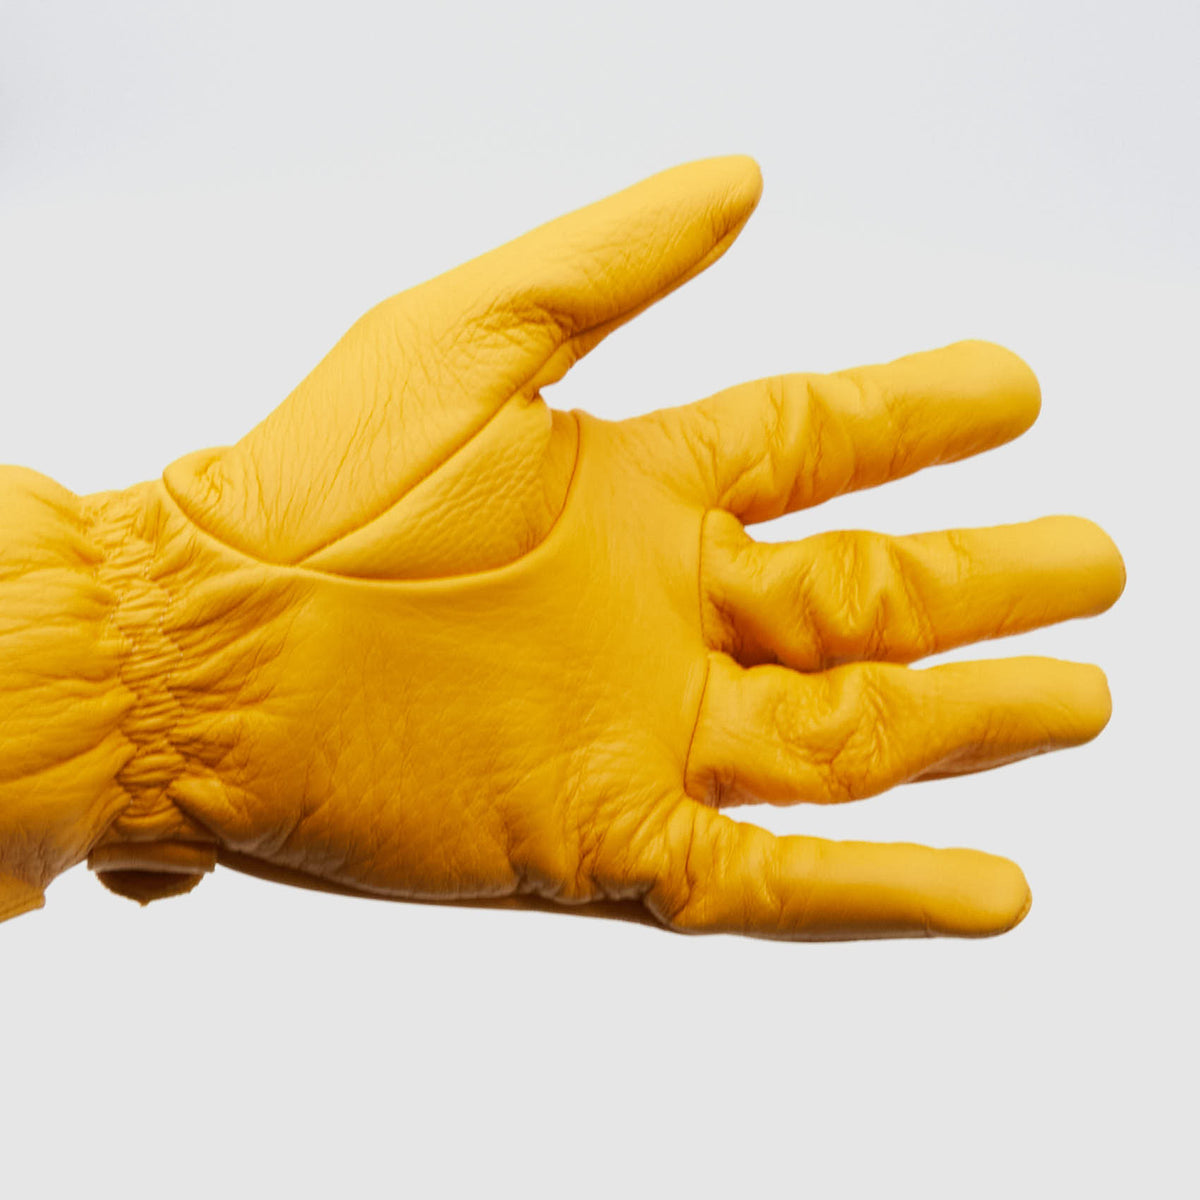 DeeCee style Deerskin Leather Work Gloves